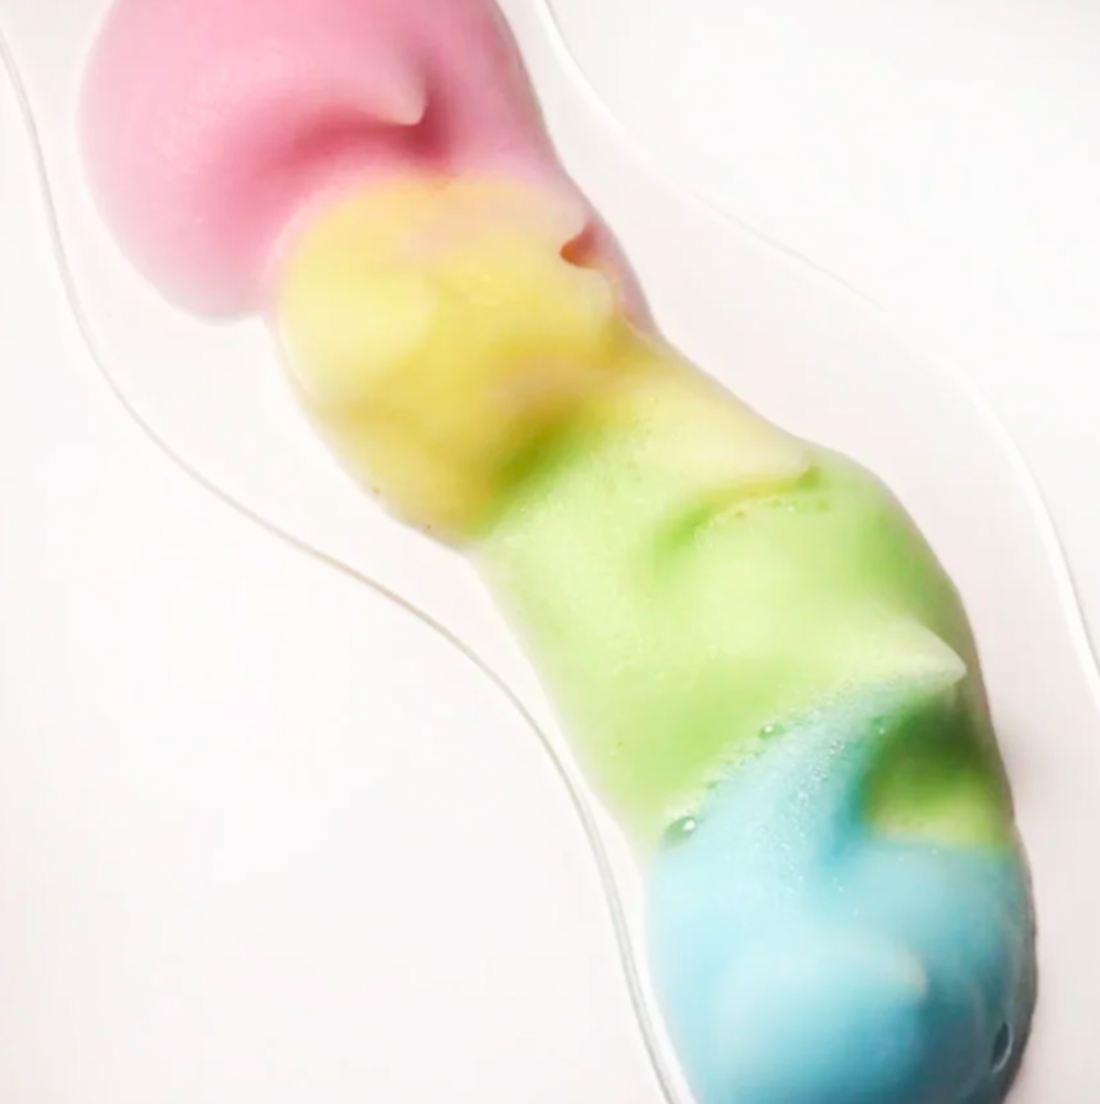 LAMI LASHES - La Colour Cleansing Foam, 100ml (Choose your colour)